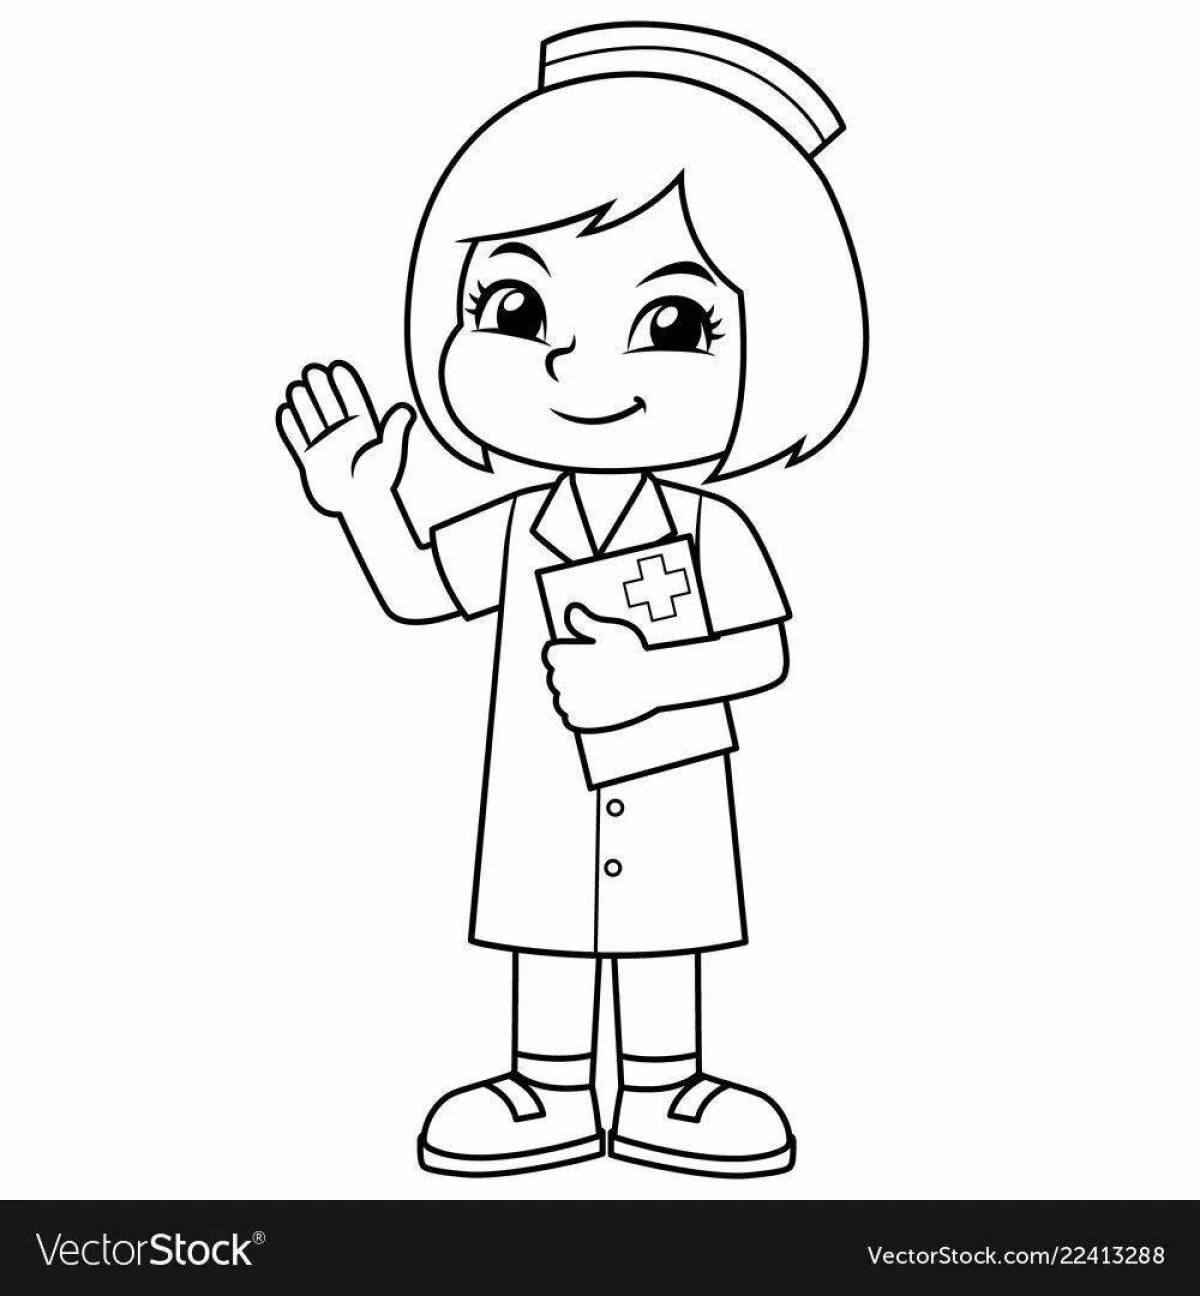 Раскраска профессия медсестра для детей